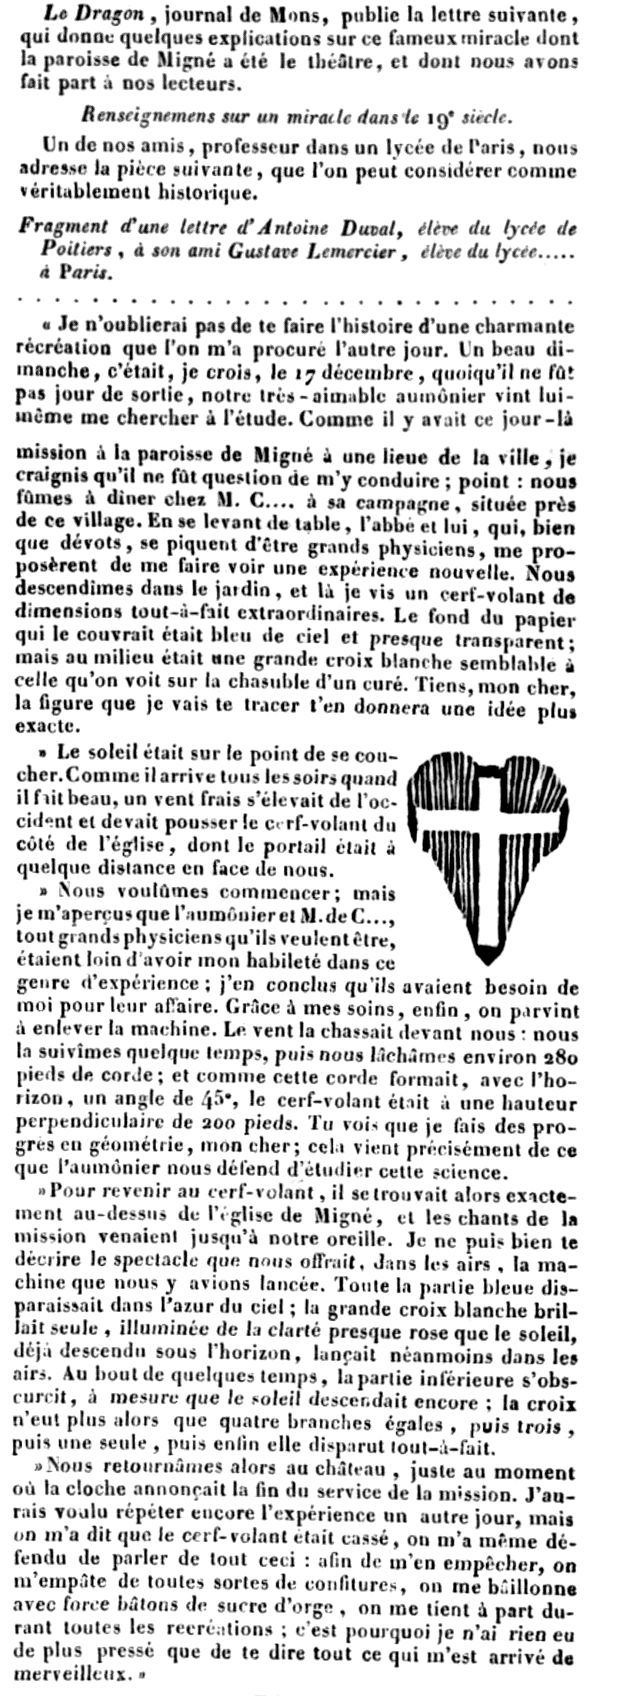 La croix de Migné 17/12/1826 - Page 2 La_fra10